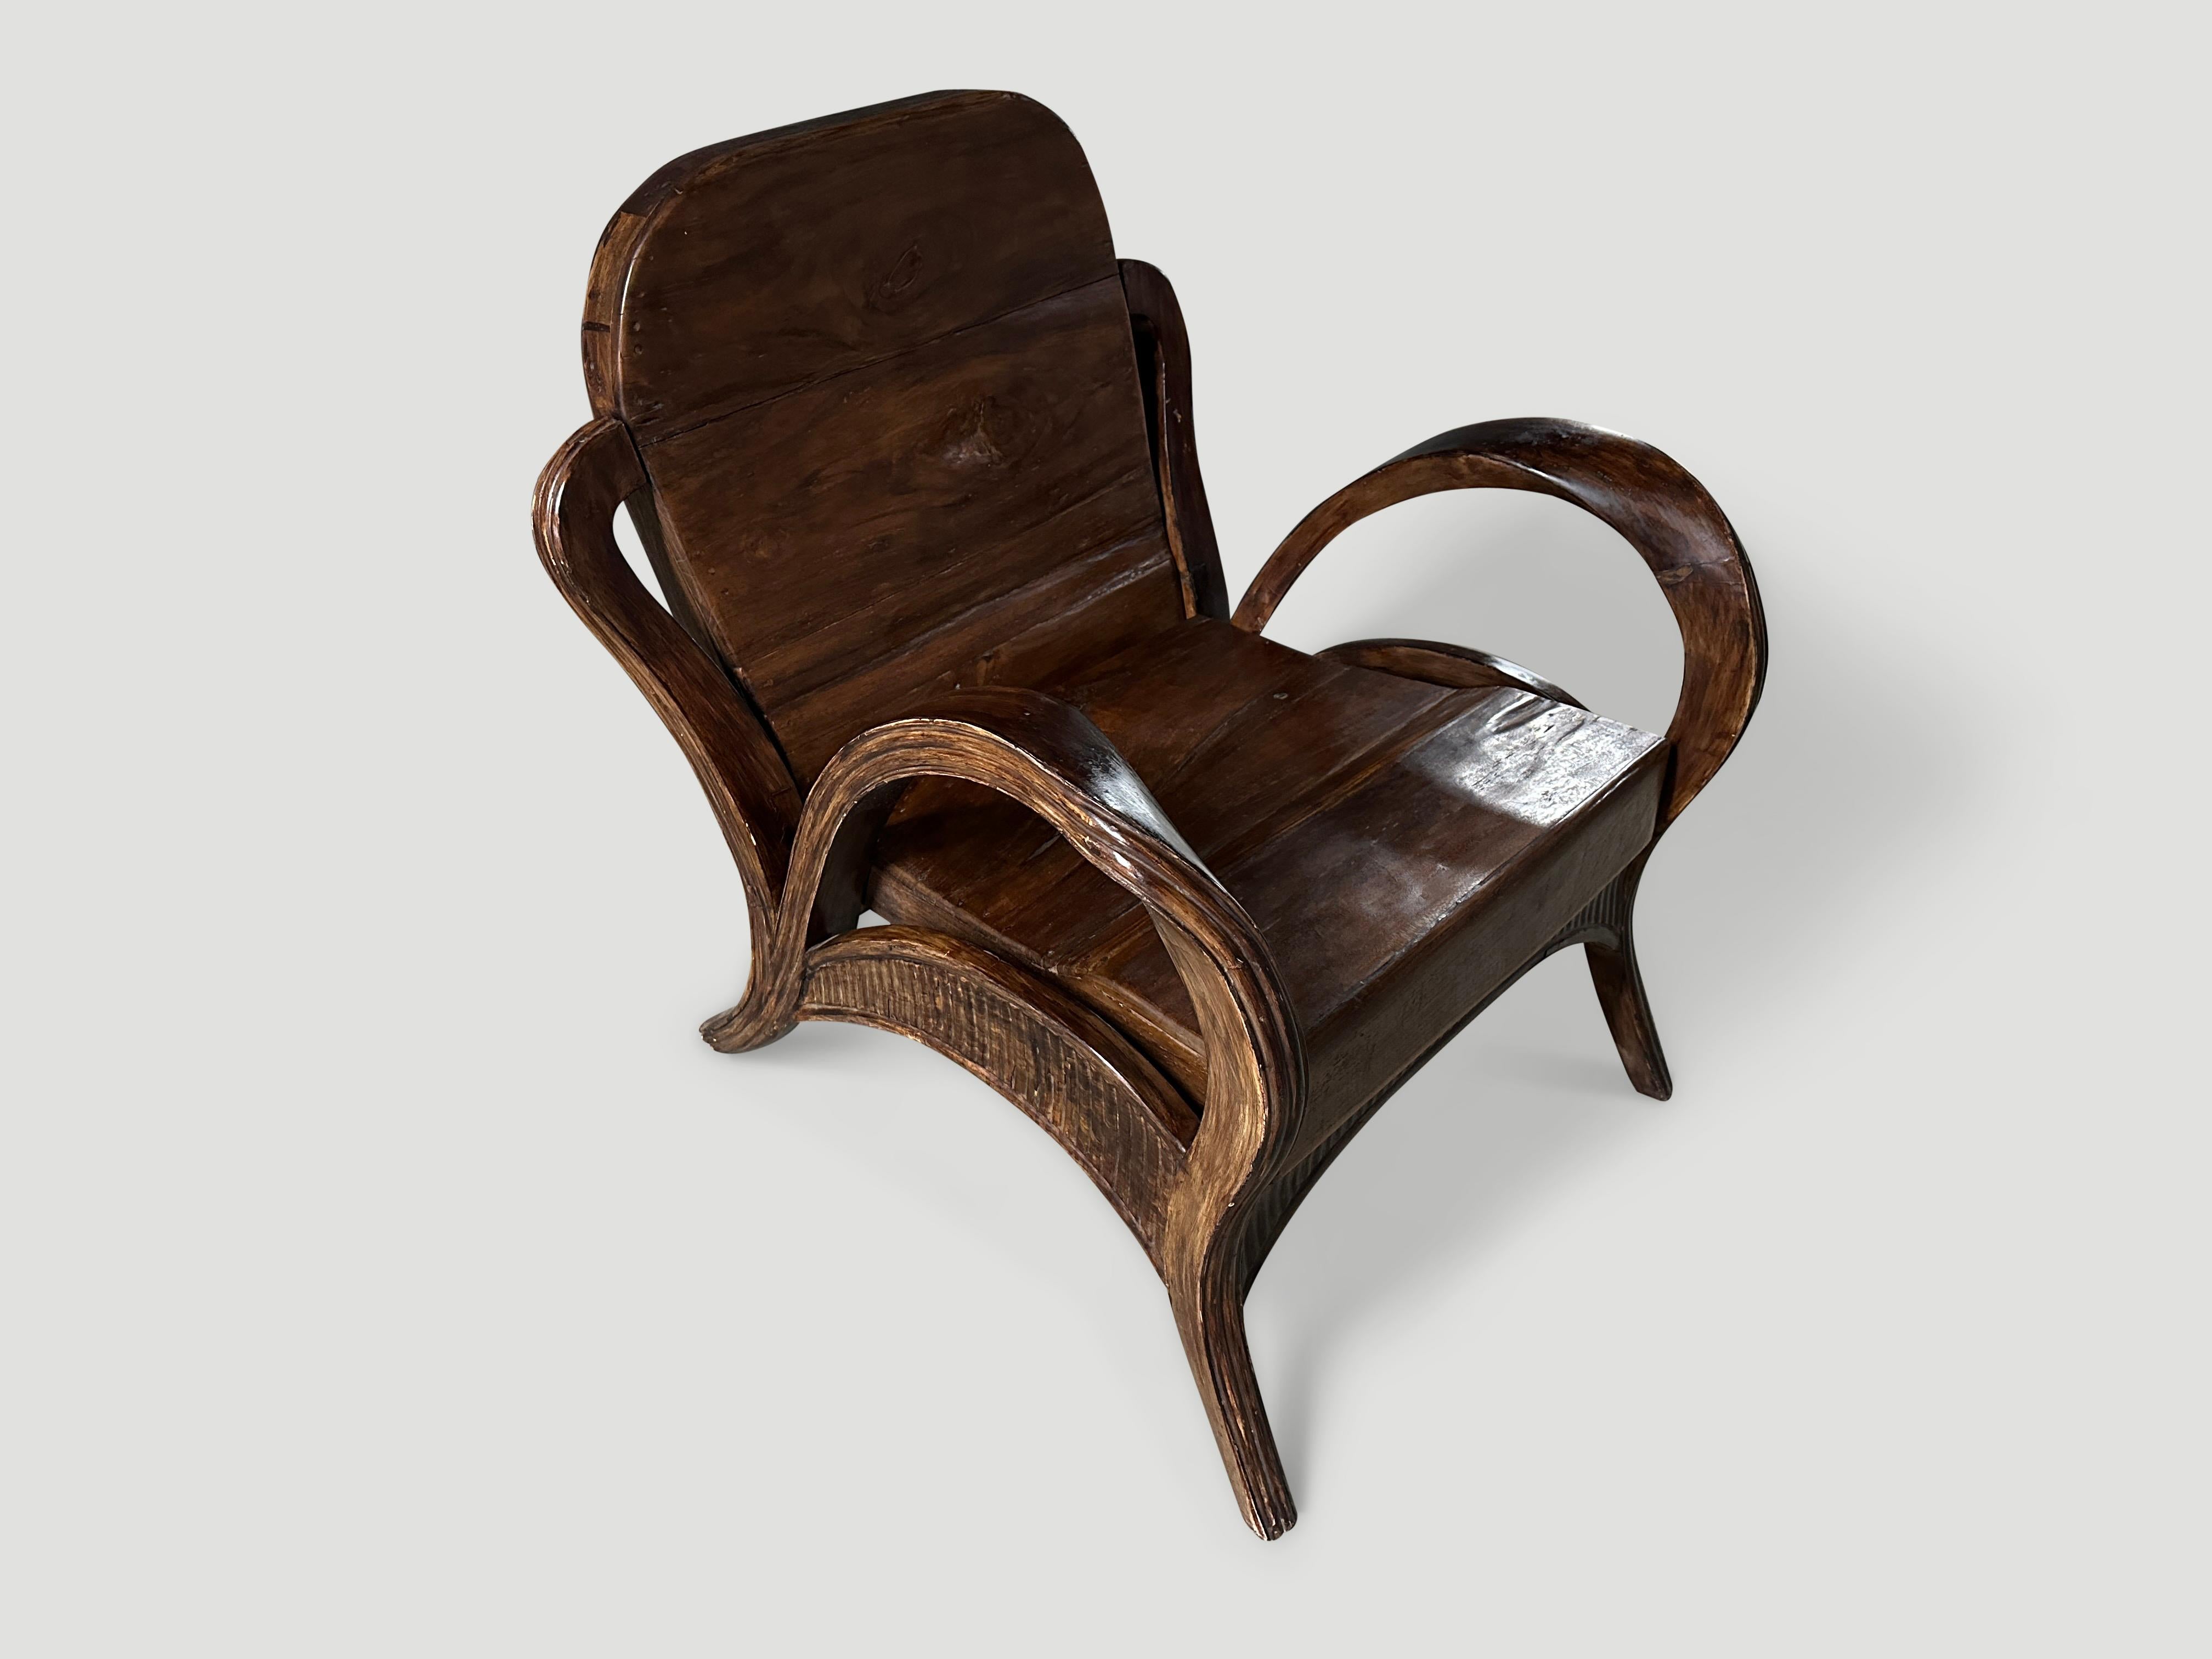 Ce fauteuil en teck de Sumatra est doté d'accoudoirs inhabituels sculptés à la main et polis à l'extrême. Vers 1950. Dimensions complètes ; Accoudoir à accoudoir 27″ de large x Jambe à jambe 30″ de profondeur x siège 16